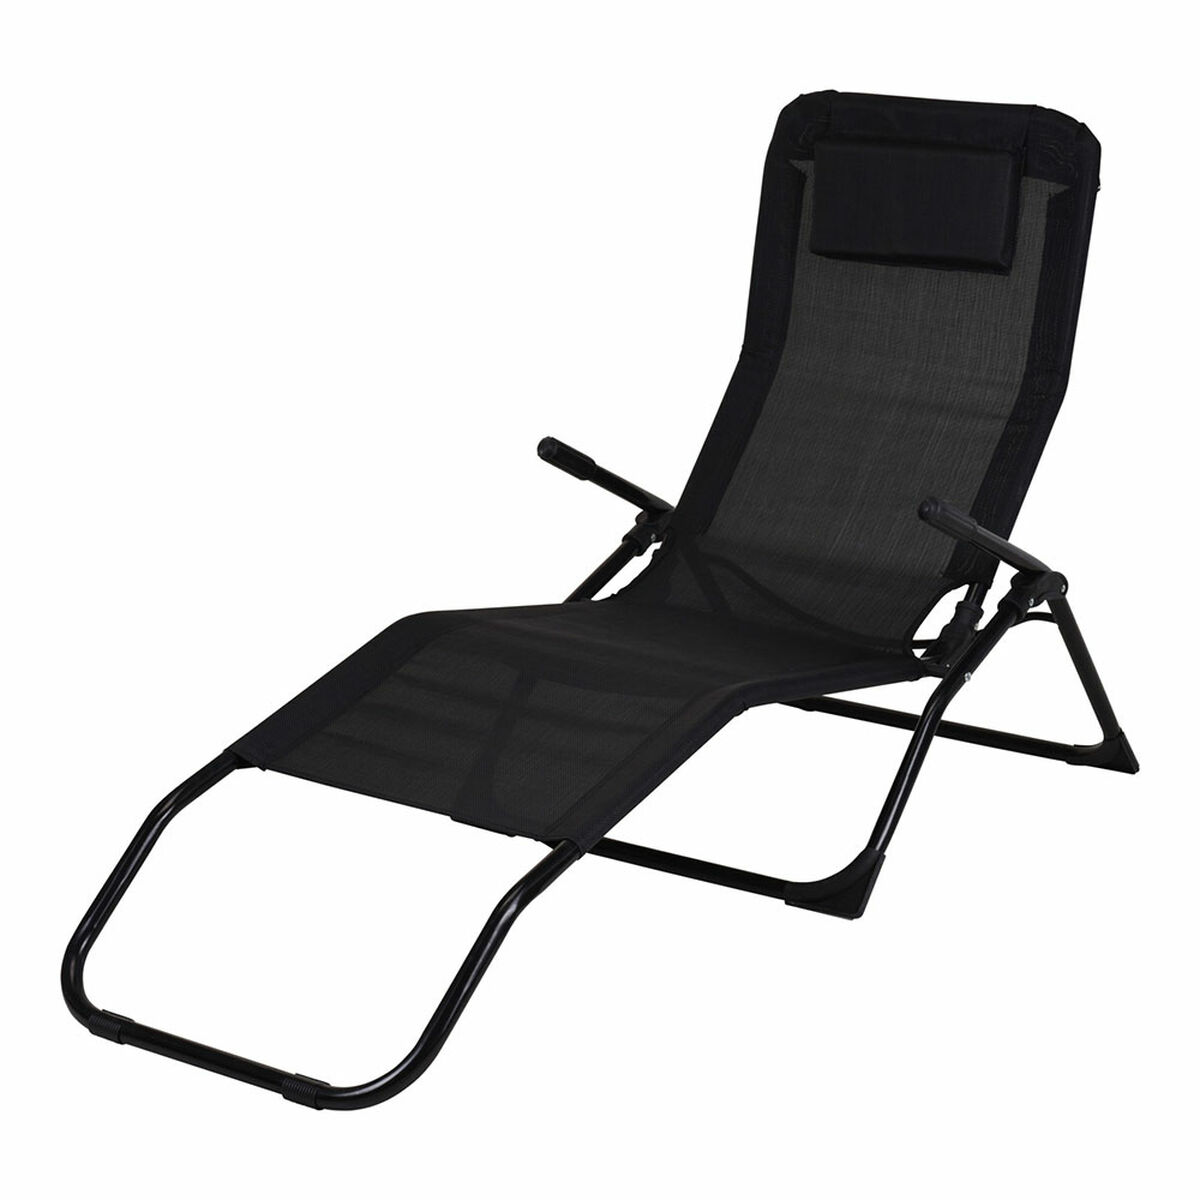 Chaise longue Noir Pliable (158 cm)